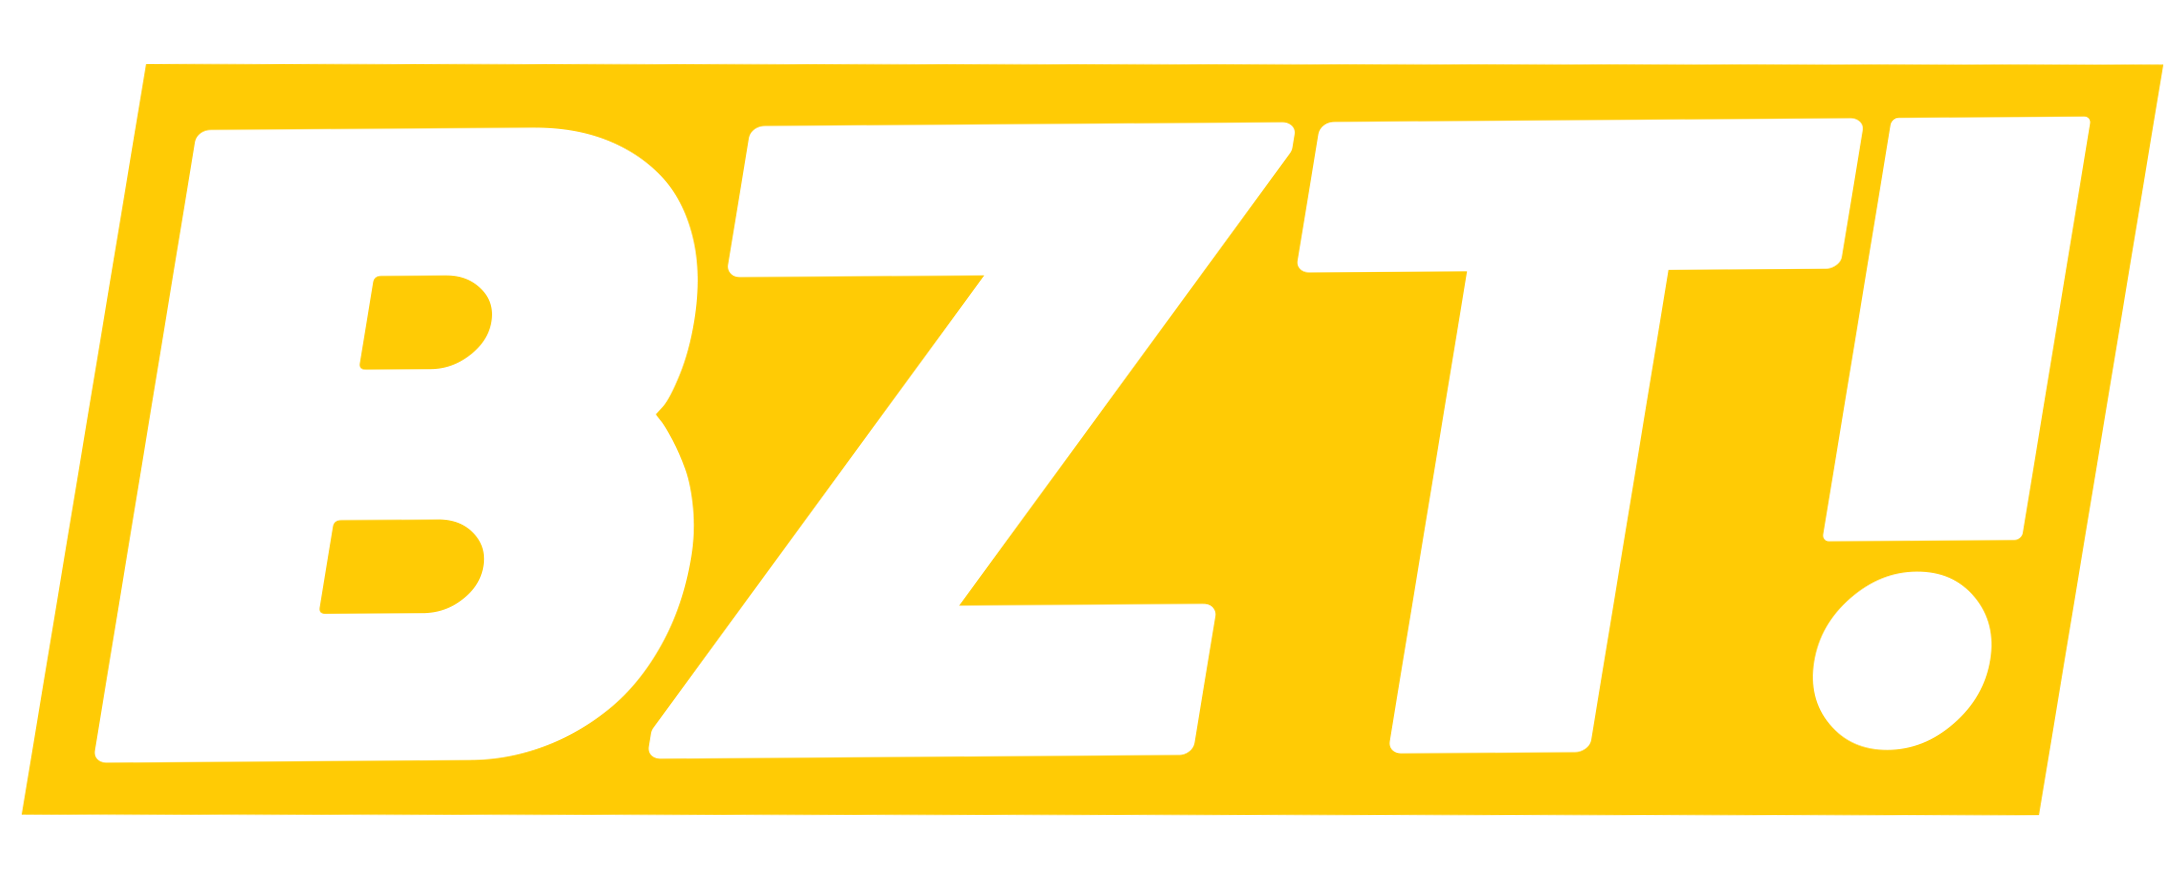 BZT! Podcasts, trilhas sonoras, voz e sound design para filmes, games e publicidade